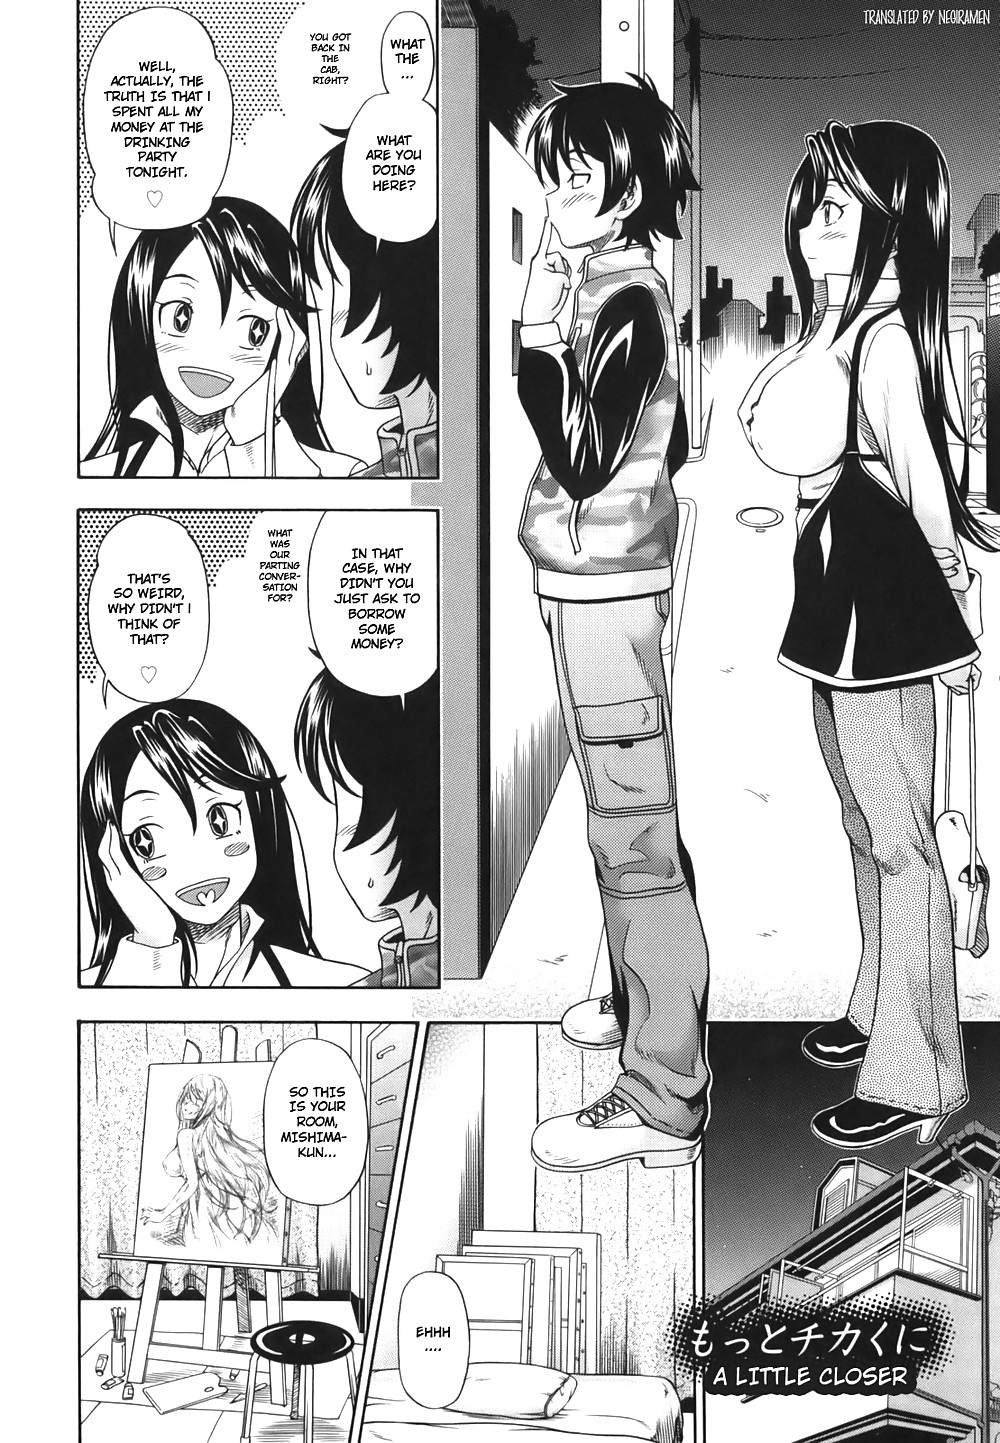 (fumetto hentai) fukudada opere erotiche #1
 #21011416